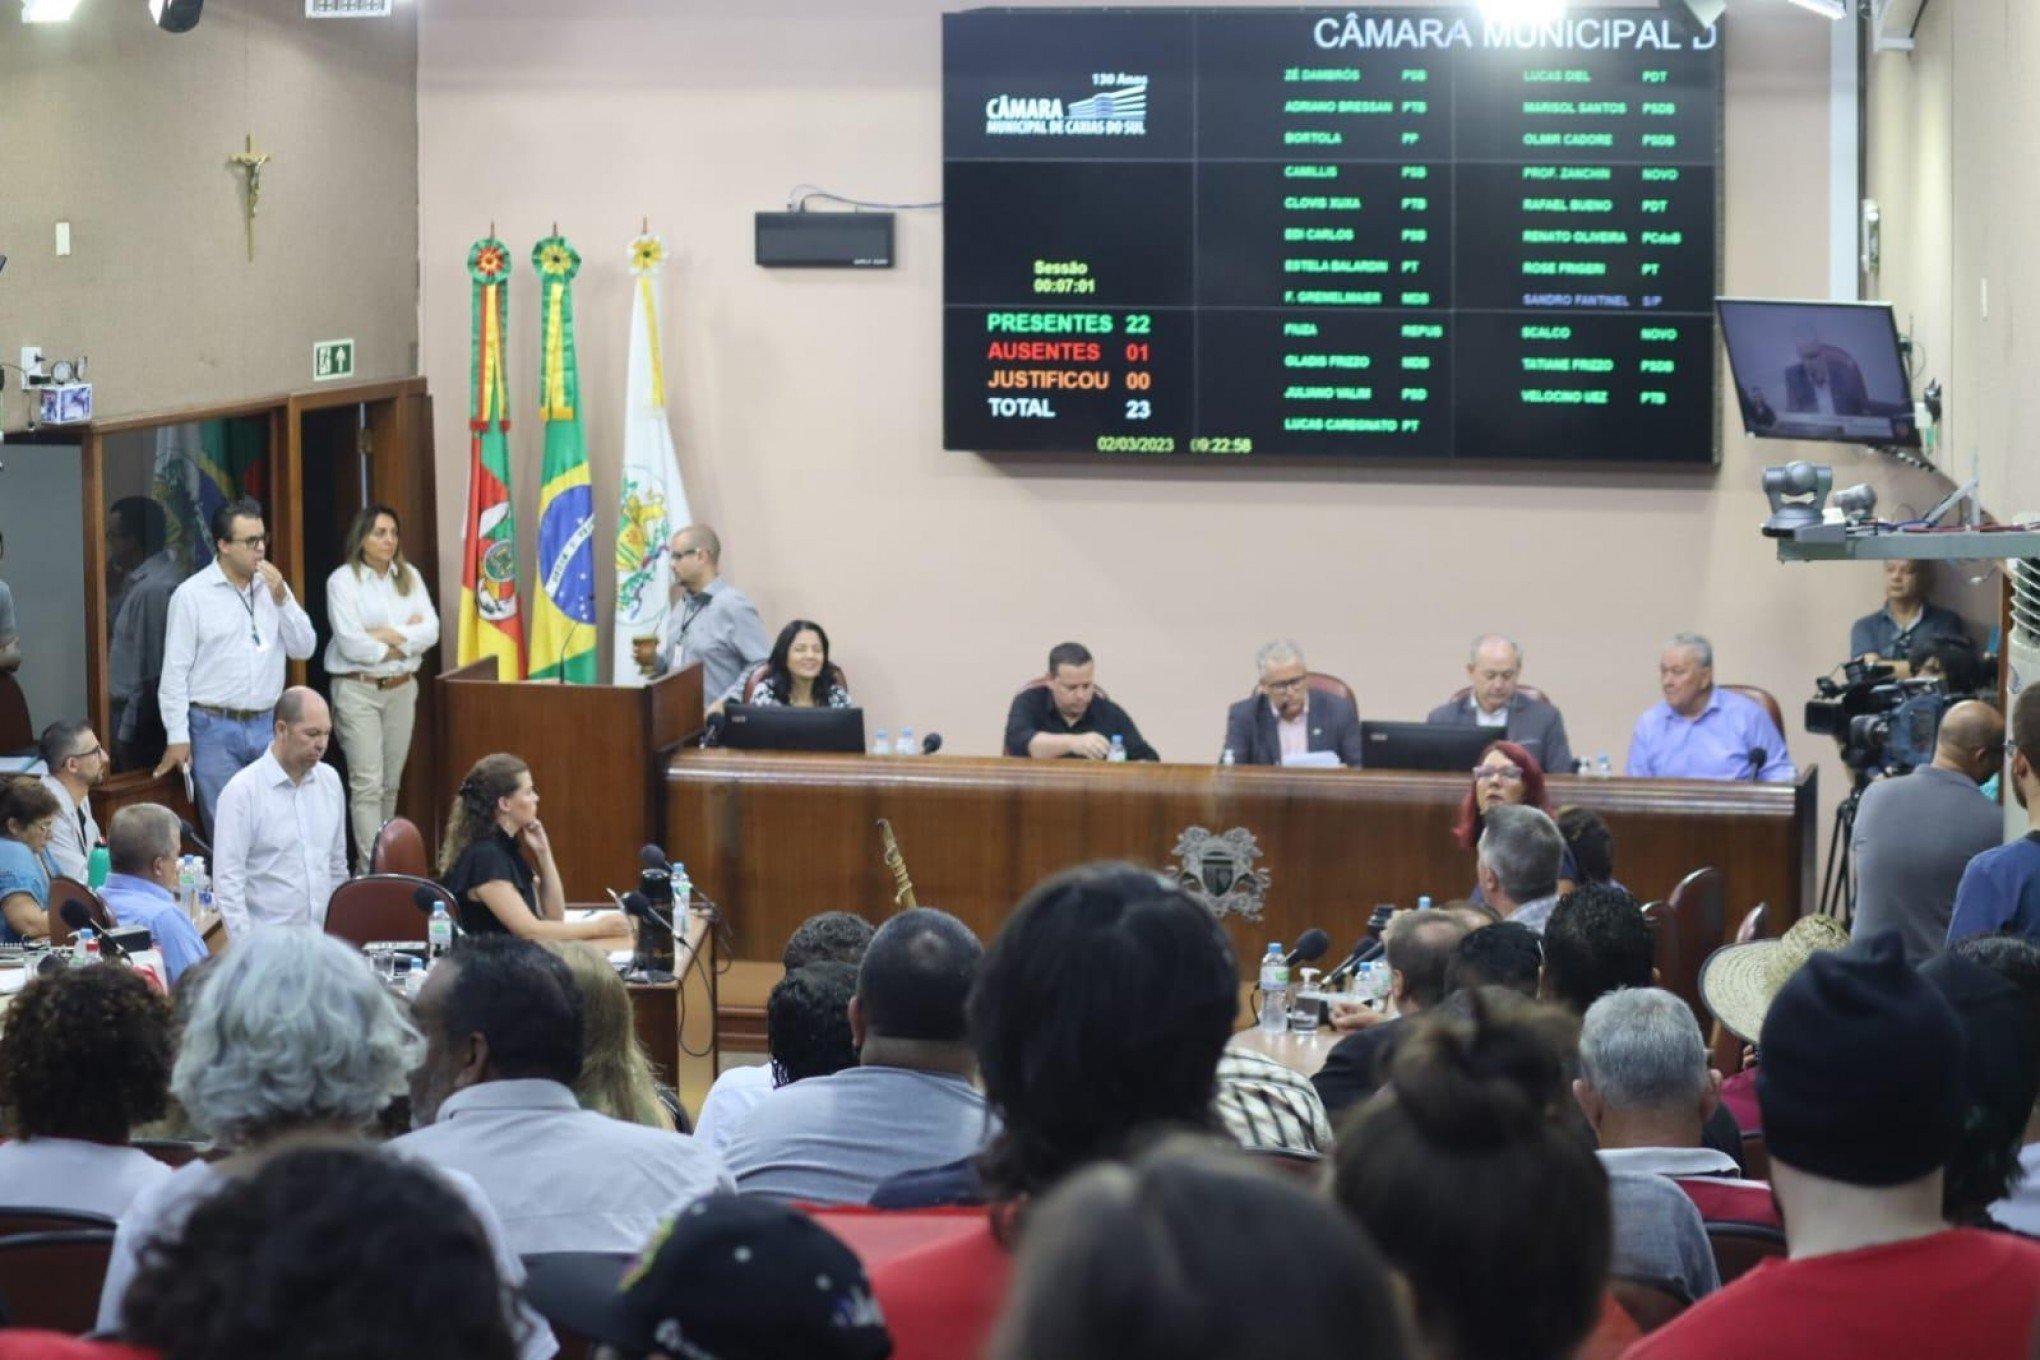 Defensorias públicas gaúcha e baiana criticam manutenção de Sandro Fantinel como vereador